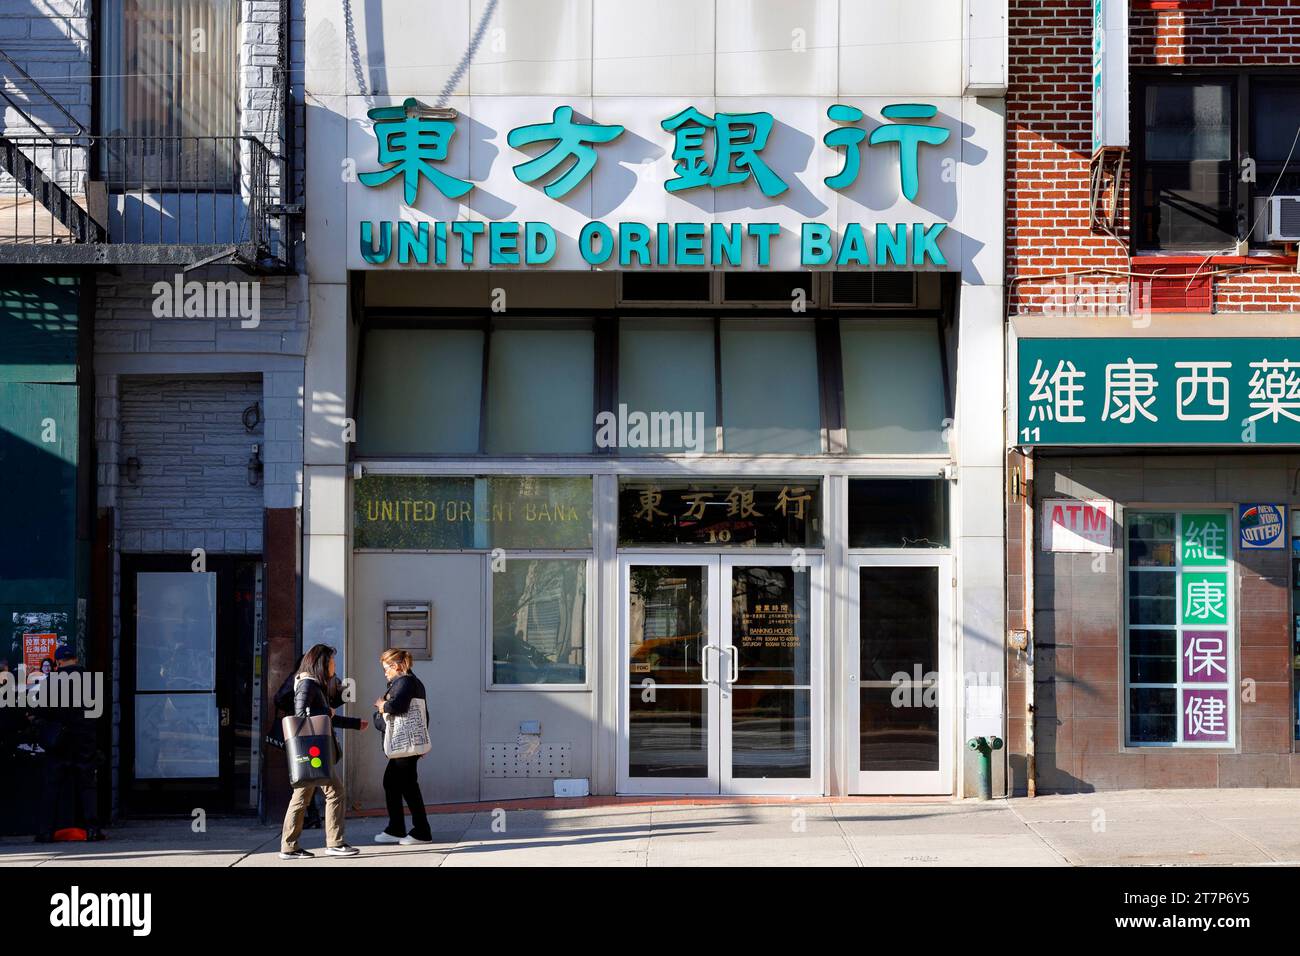 United Orient Bank 東方銀行, 10 Chatham Square, New York, NYC, Foto einer chinesisch-amerikanischen Bank in Manhattan Chinatown. Stockfoto